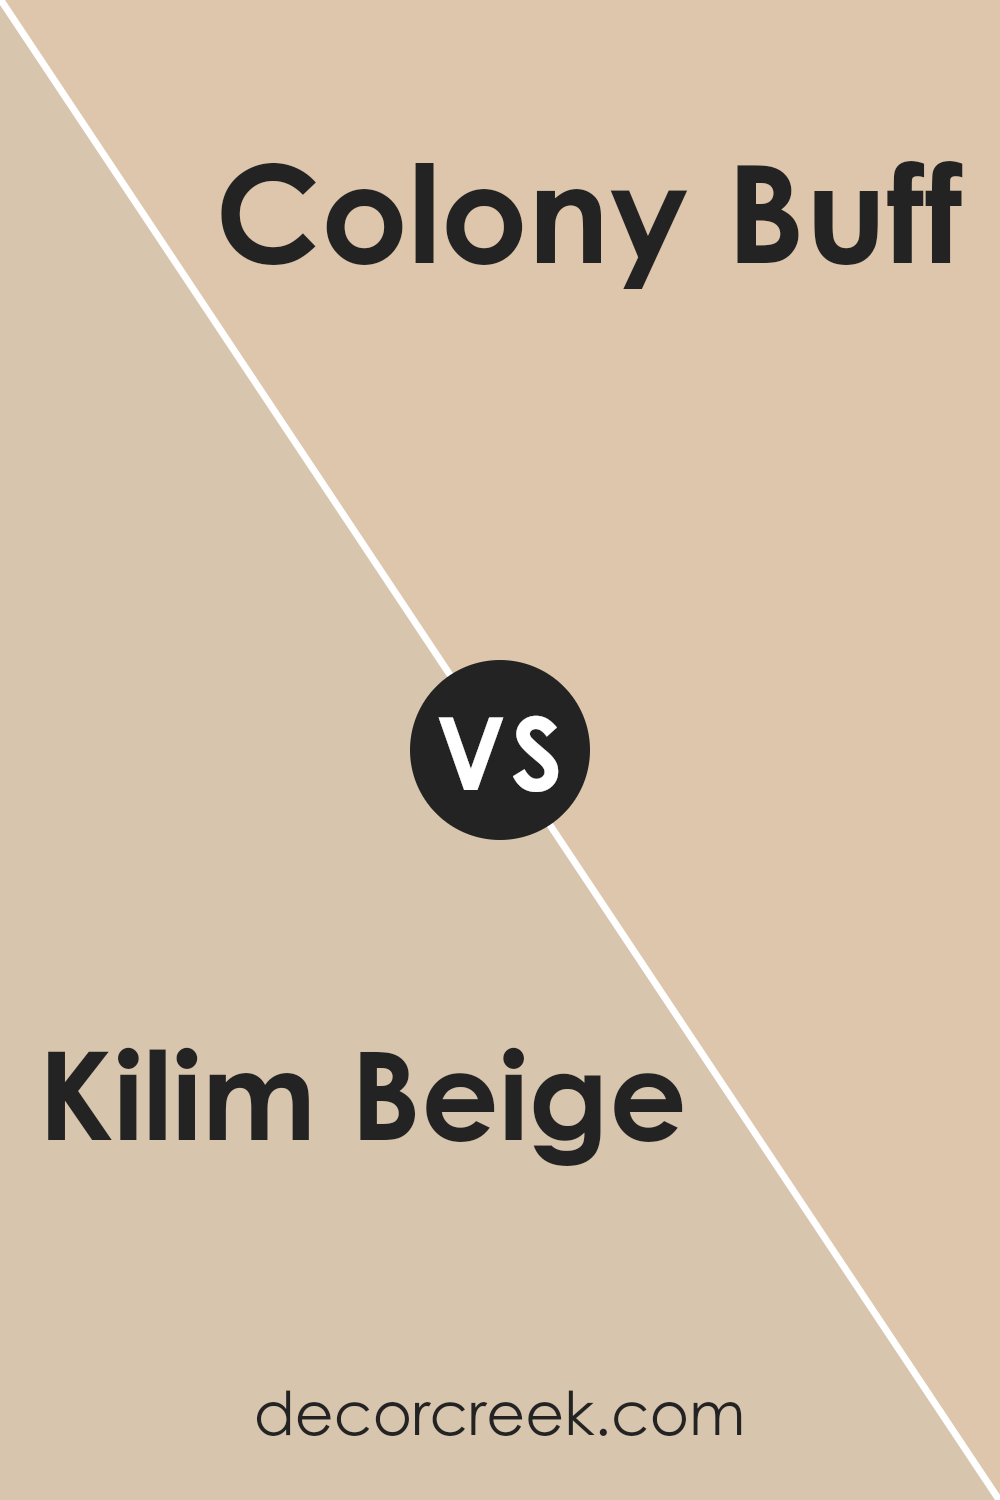 kilim_beige_sw_6106_vs_colony_buff_sw_7723